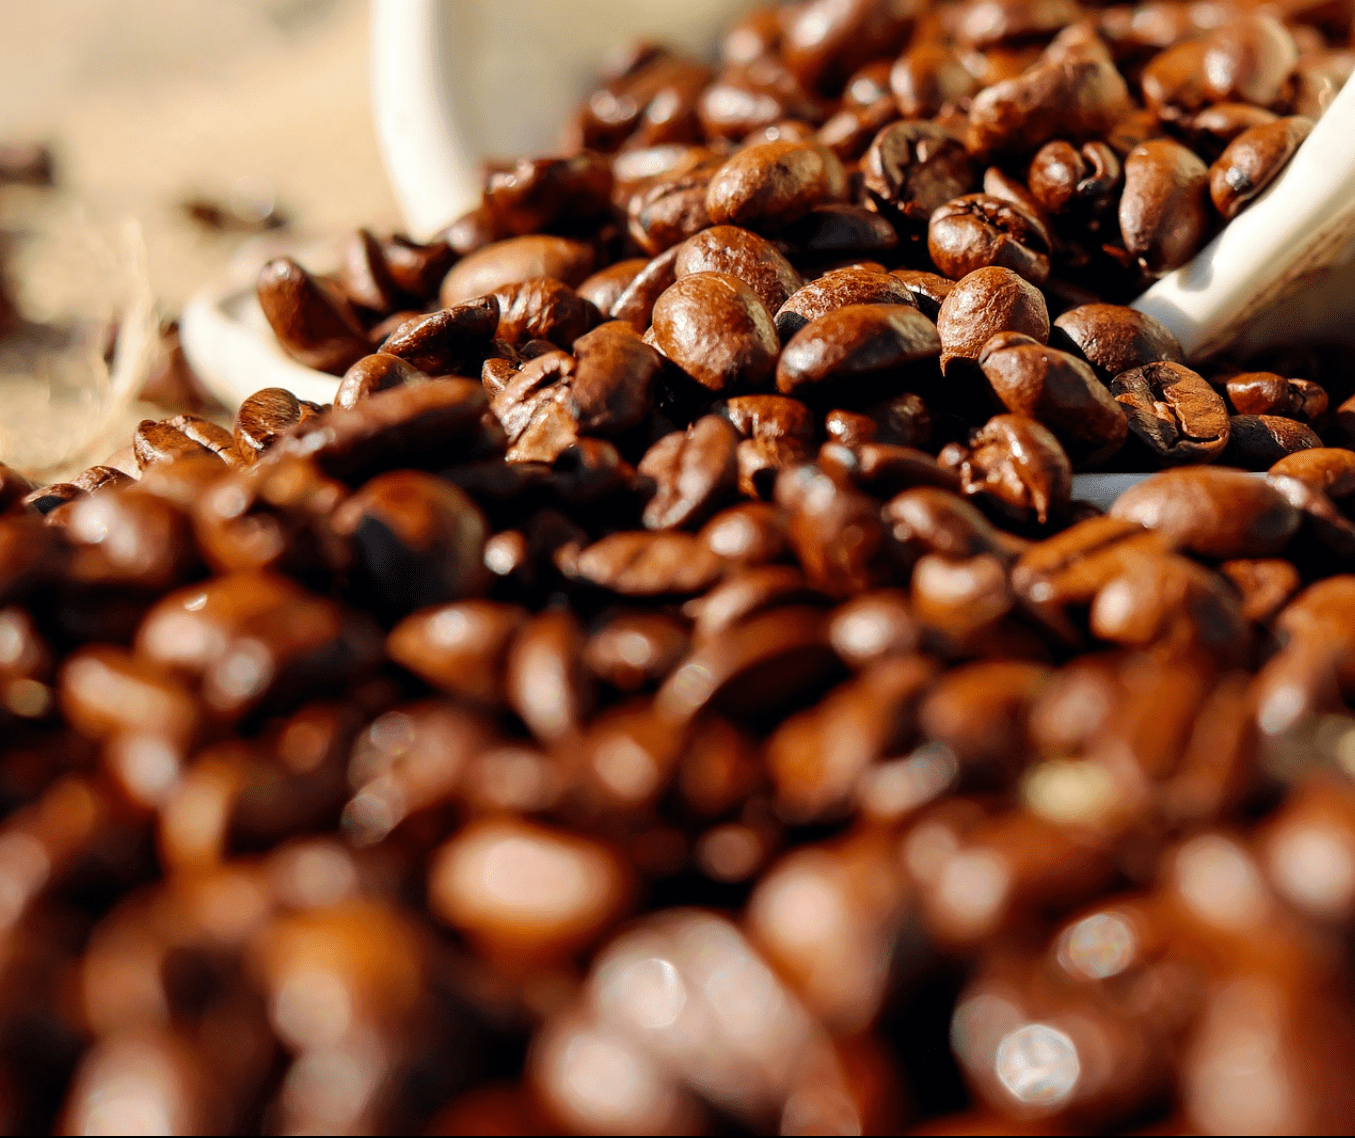 Brasil exporta 41,1 milhões de sacas de café no ano safra 2018/19 e bate recorde